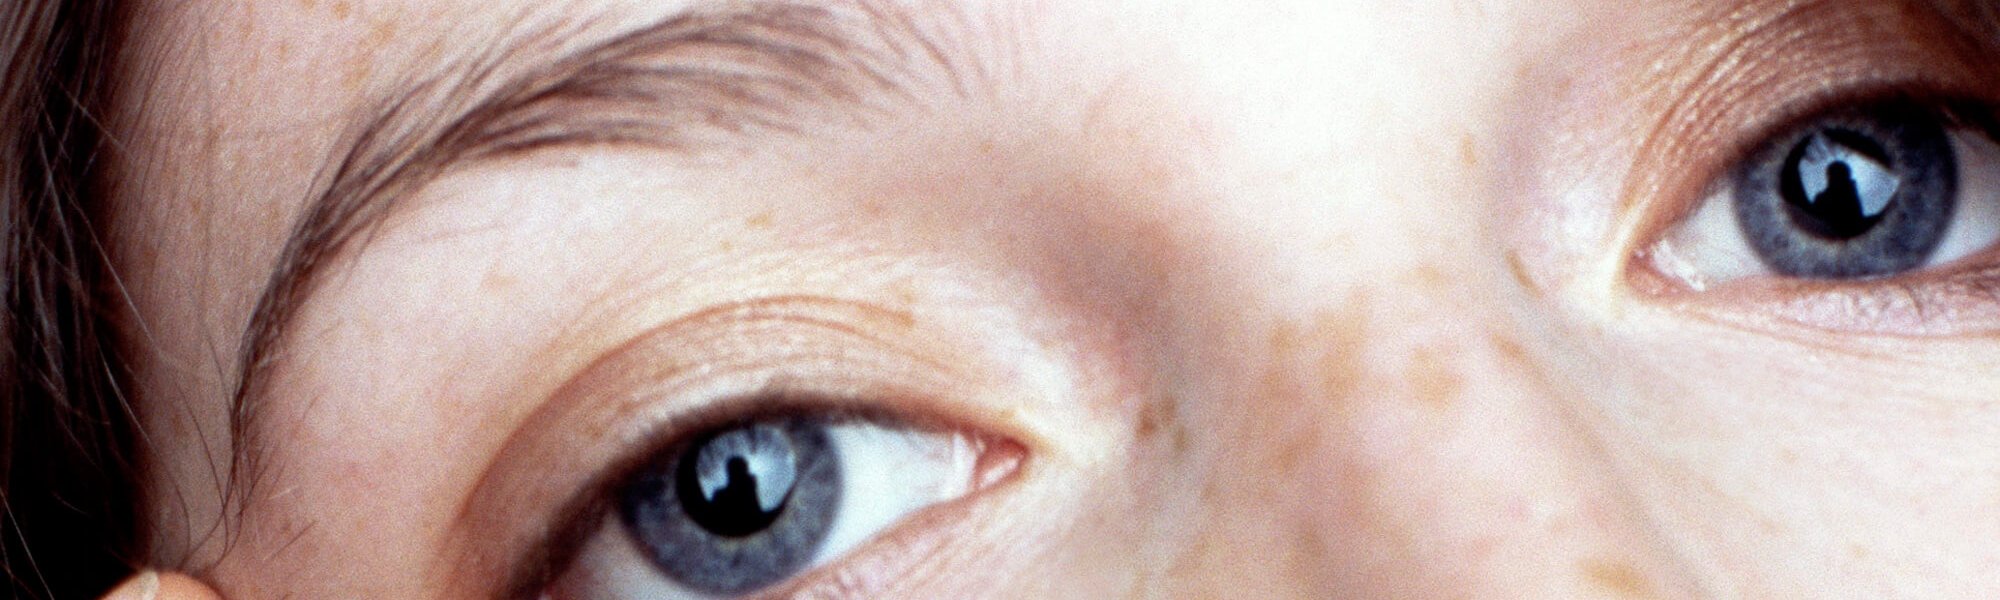 Acupresion En El Contorno De Los Ojos La Solucion Para Una Mirada Mas Joven